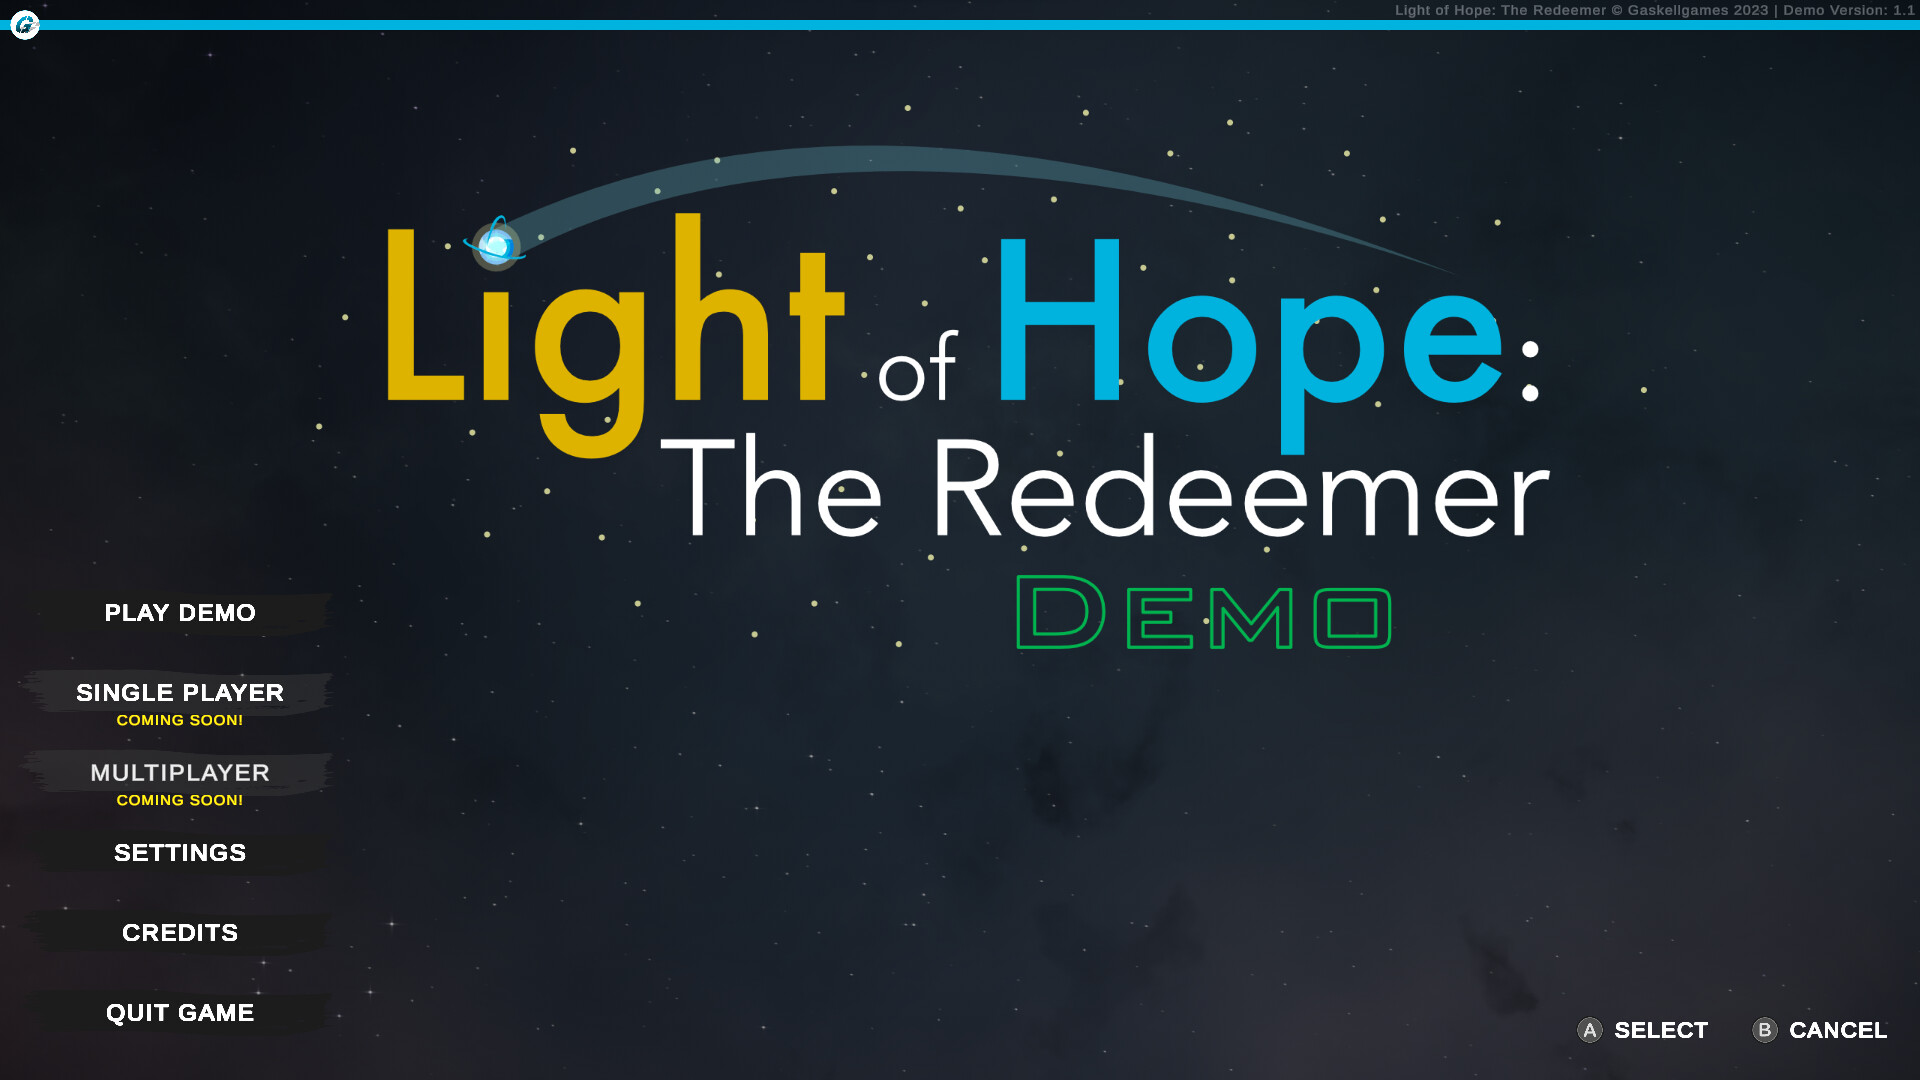 Light of Hope: The Redeemer Demo Featured Screenshot #1